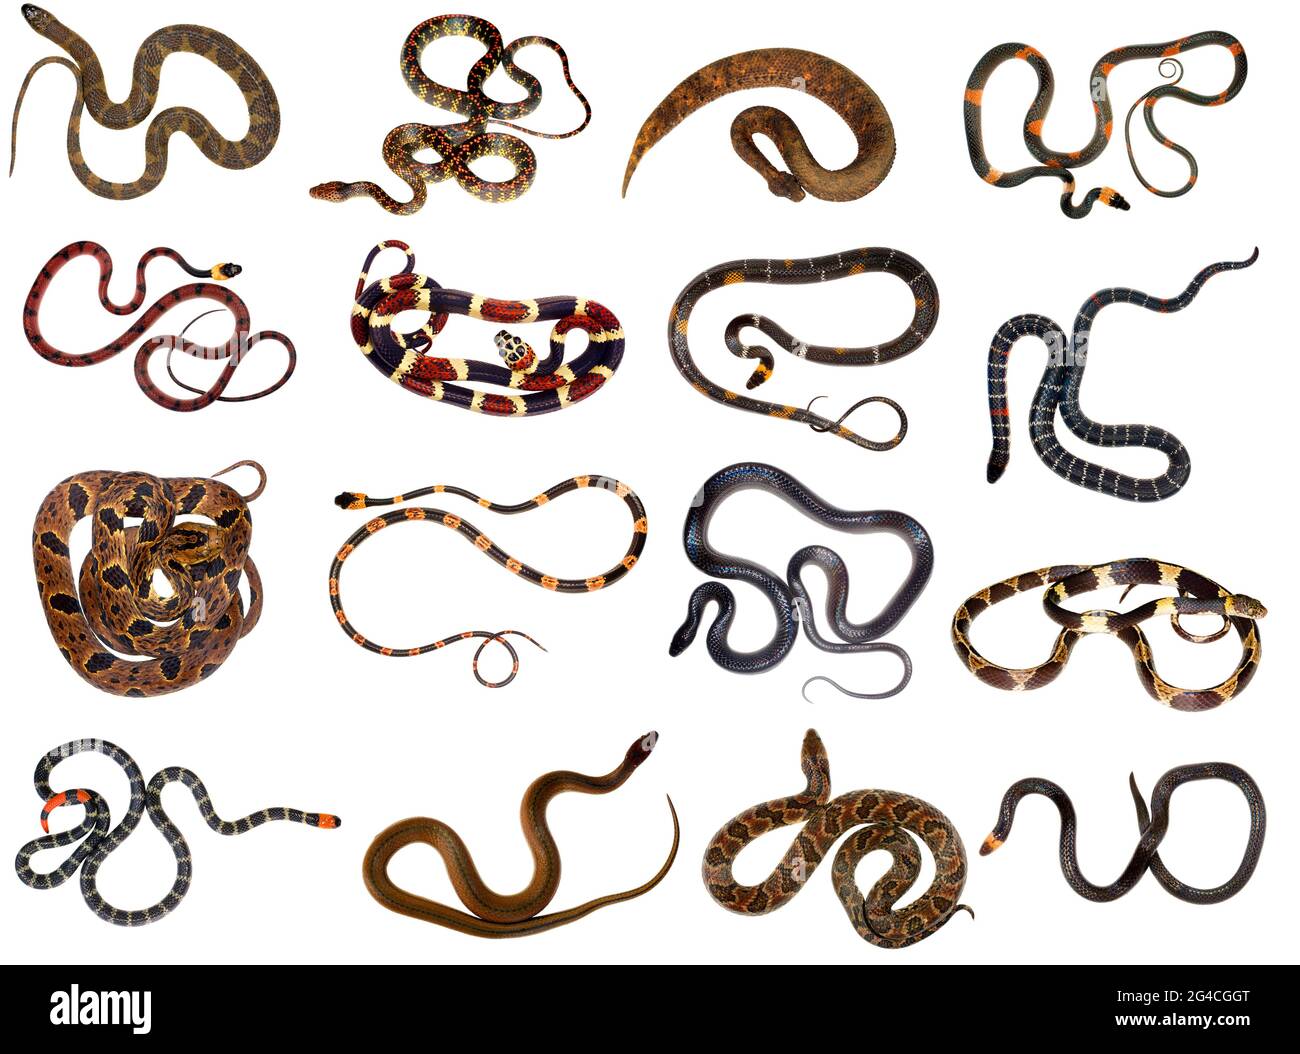 Raccolta di serpenti della foresta amazzonica Foto Stock